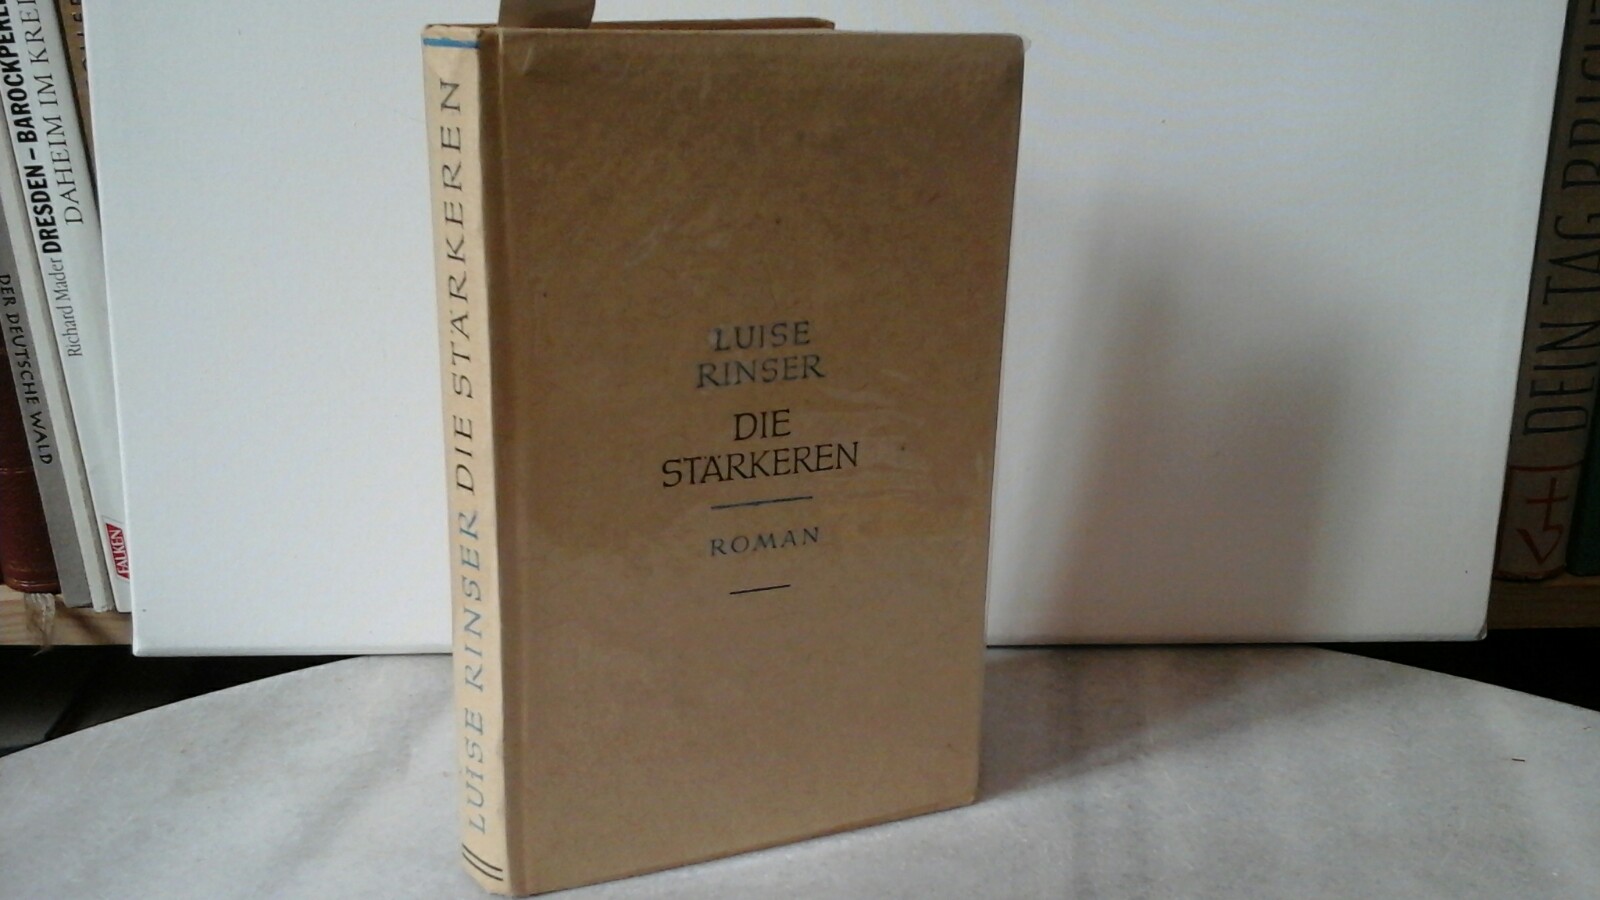 RINSER, LUISE: Die Strkeren. Roman. Erste /1./ Auflage.